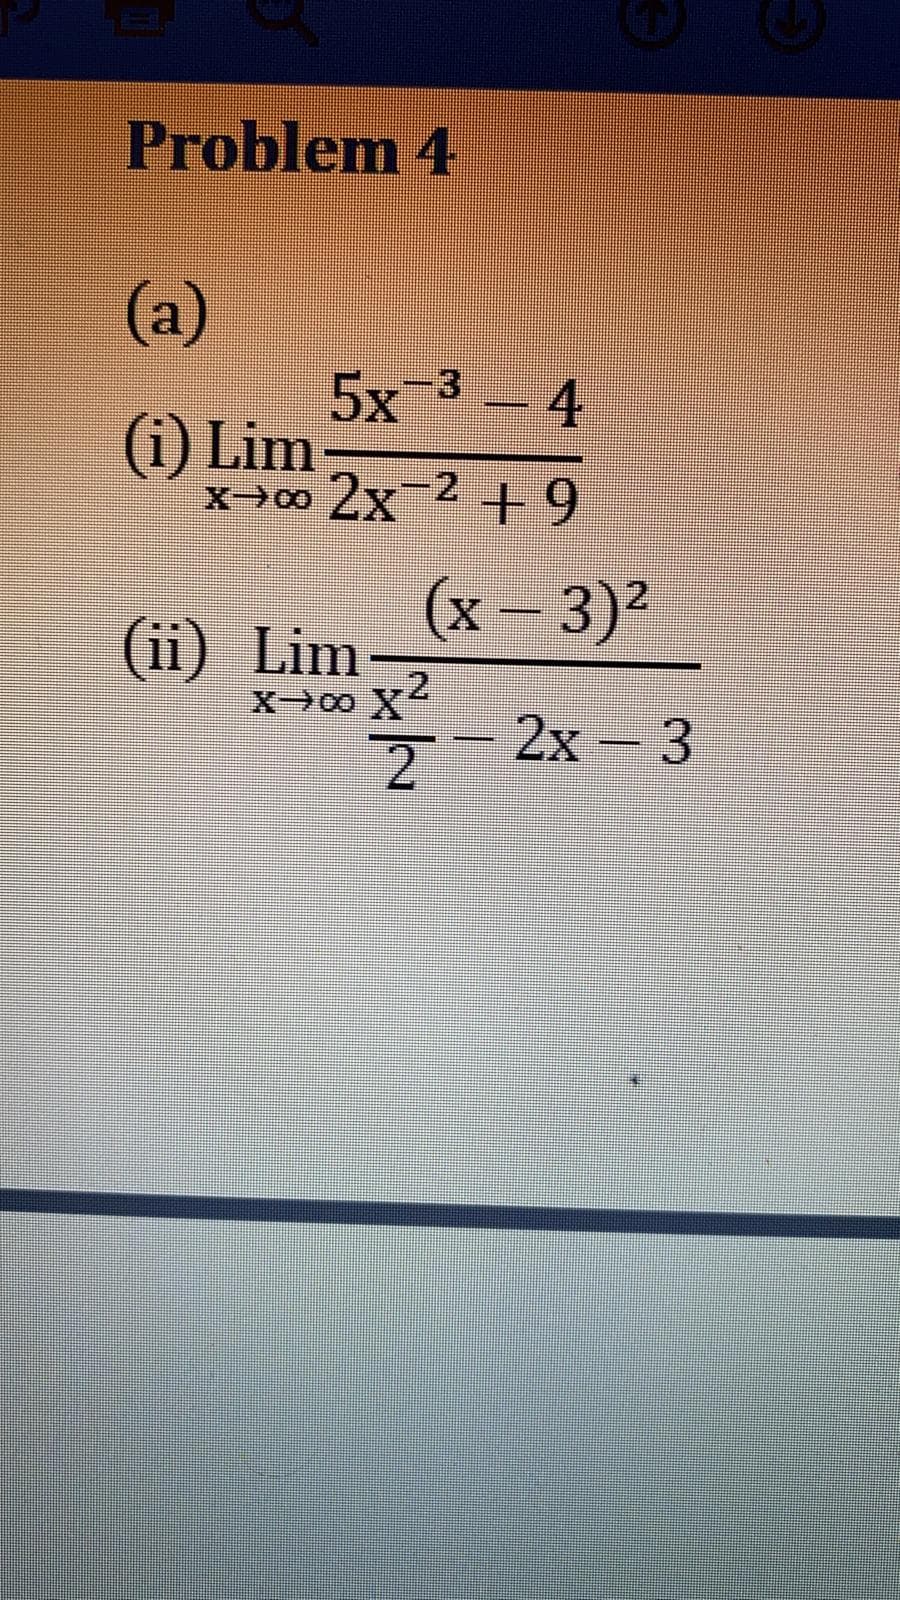 Problem 4
(a)
5x-3
(i) Lim
X00 2x 2+9
-4
(x-3)²
(ii) Lim
.2
X→00 X
2x- 3
